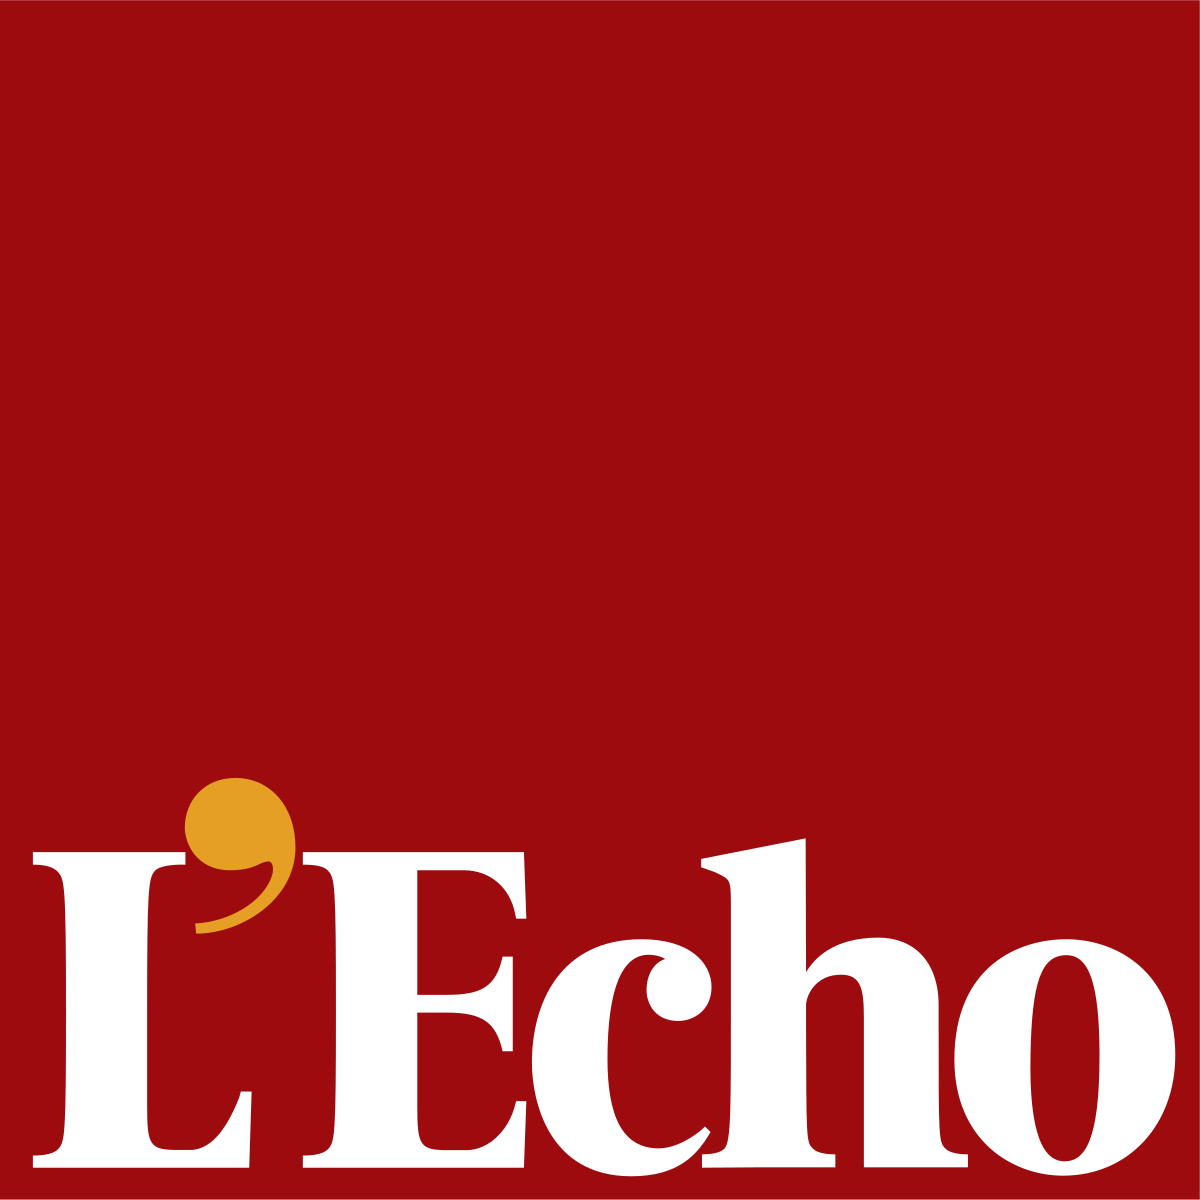 Artikel L’Echo